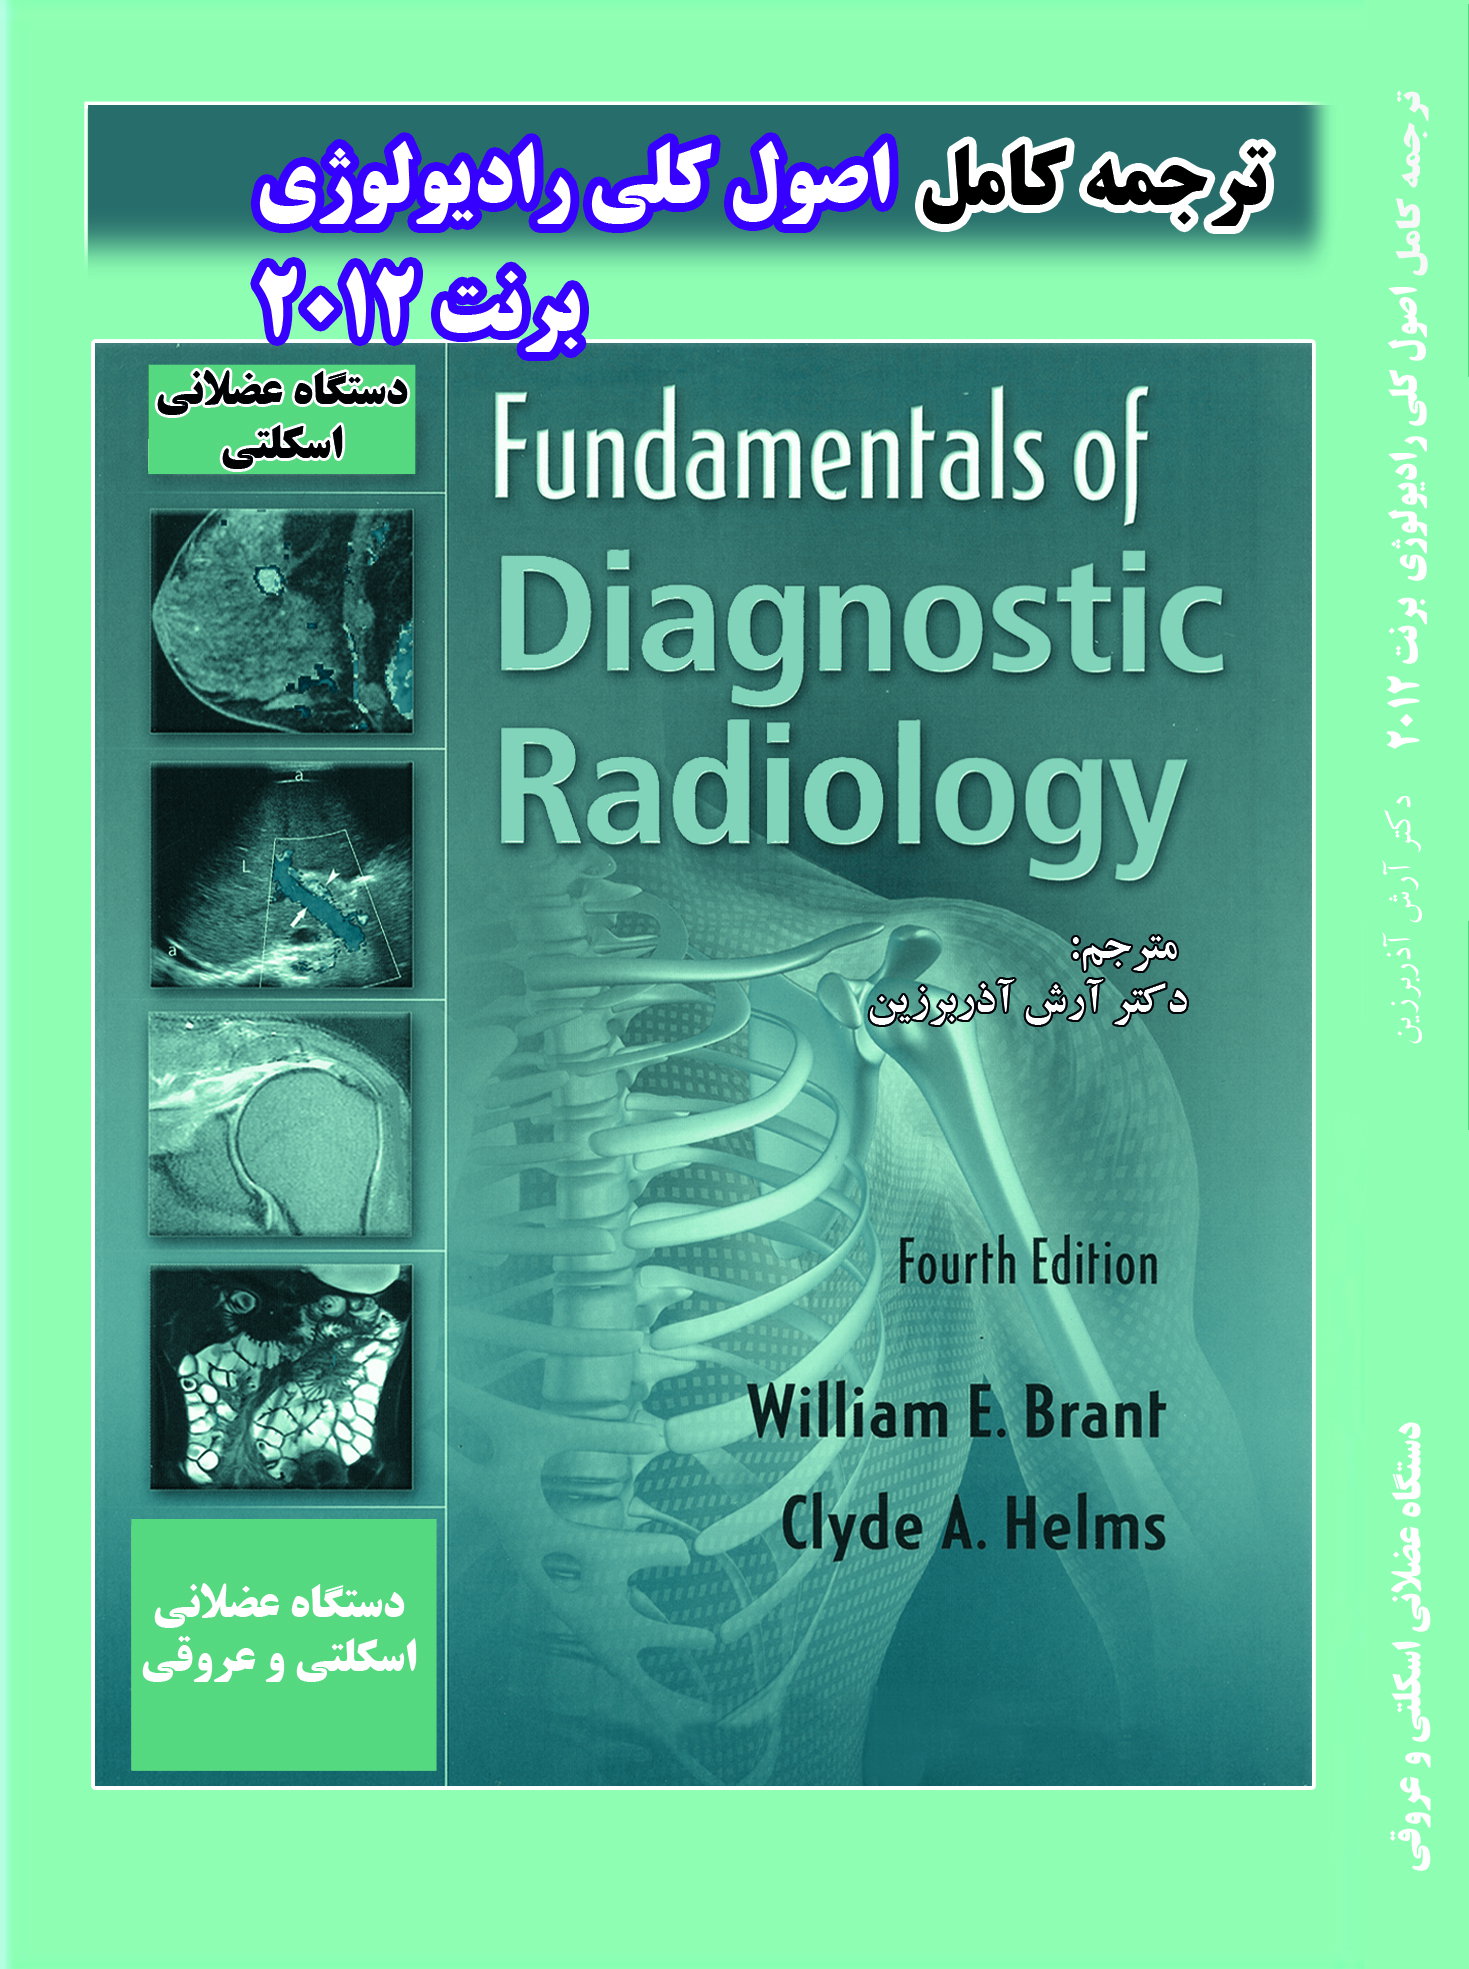 تالیفات دکتر آرش آذربرین | سونوگرافی و رادیولوژی قلهک | رادیولوژی | سونوگرافی | سونوگرافی قلهک |